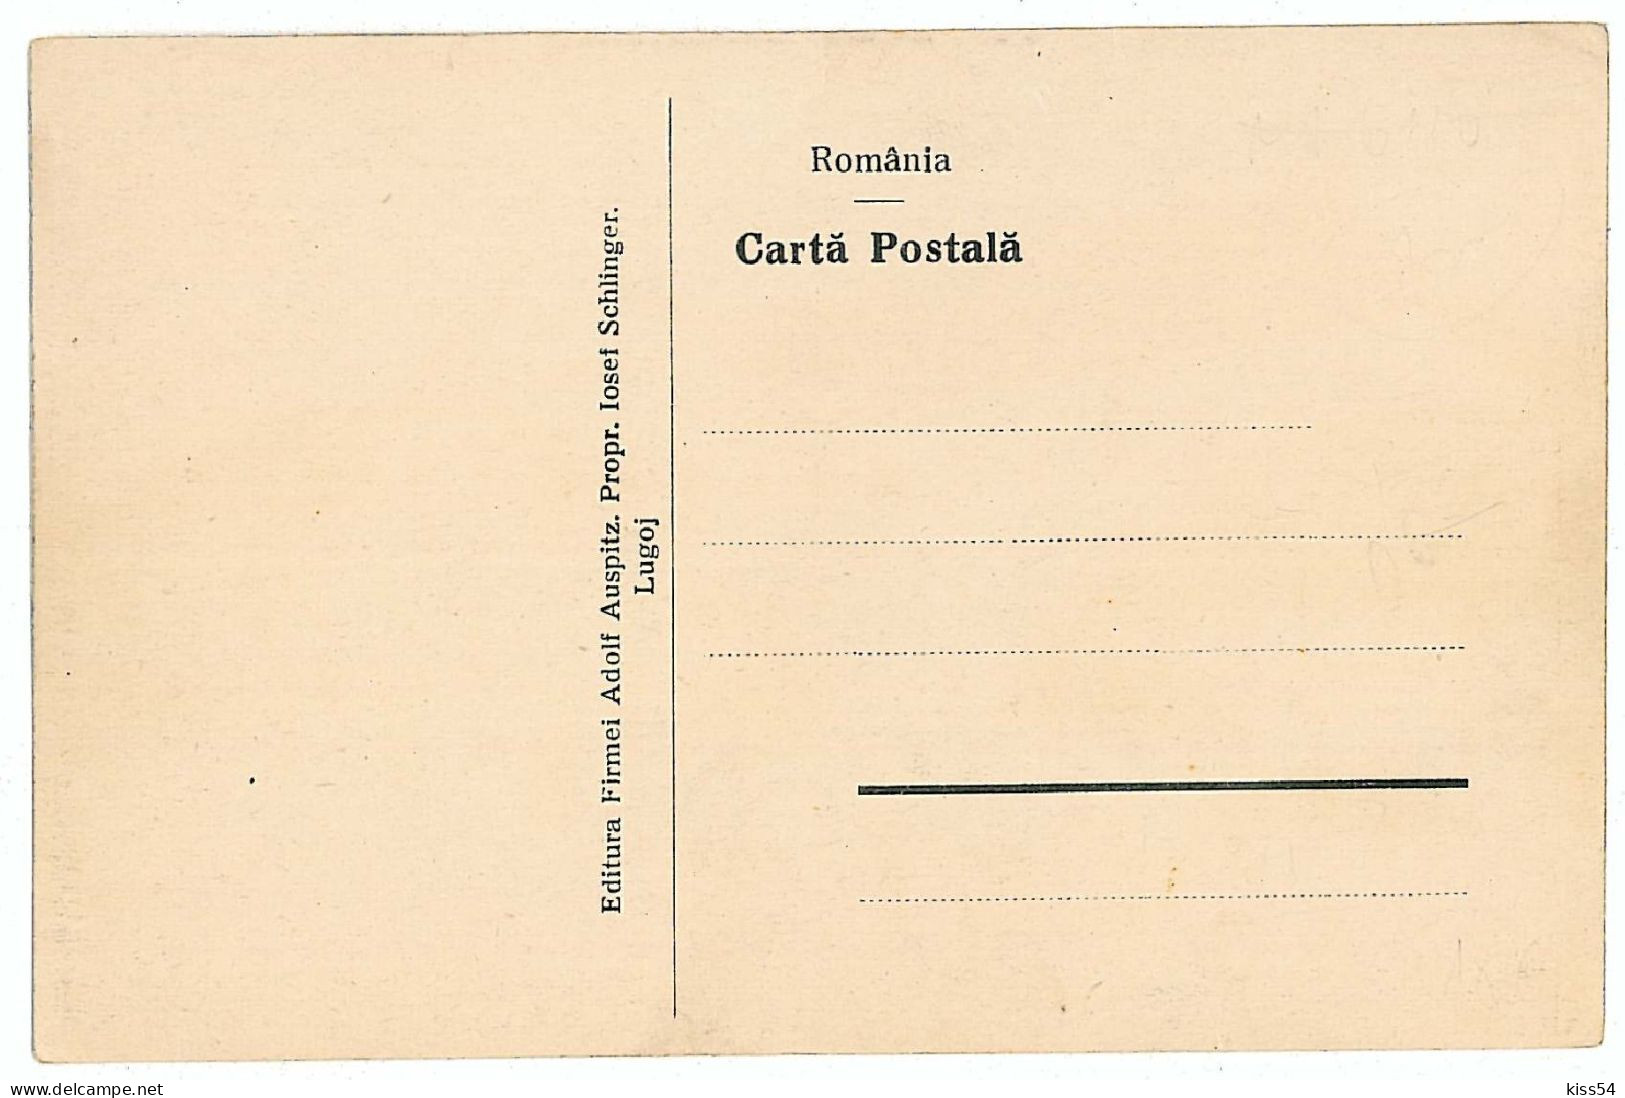 RO 86 - 705 LUGOJ, Timis, Romania, Hall, Boutiques, Stalls - Old Postcard - Unused - Romania